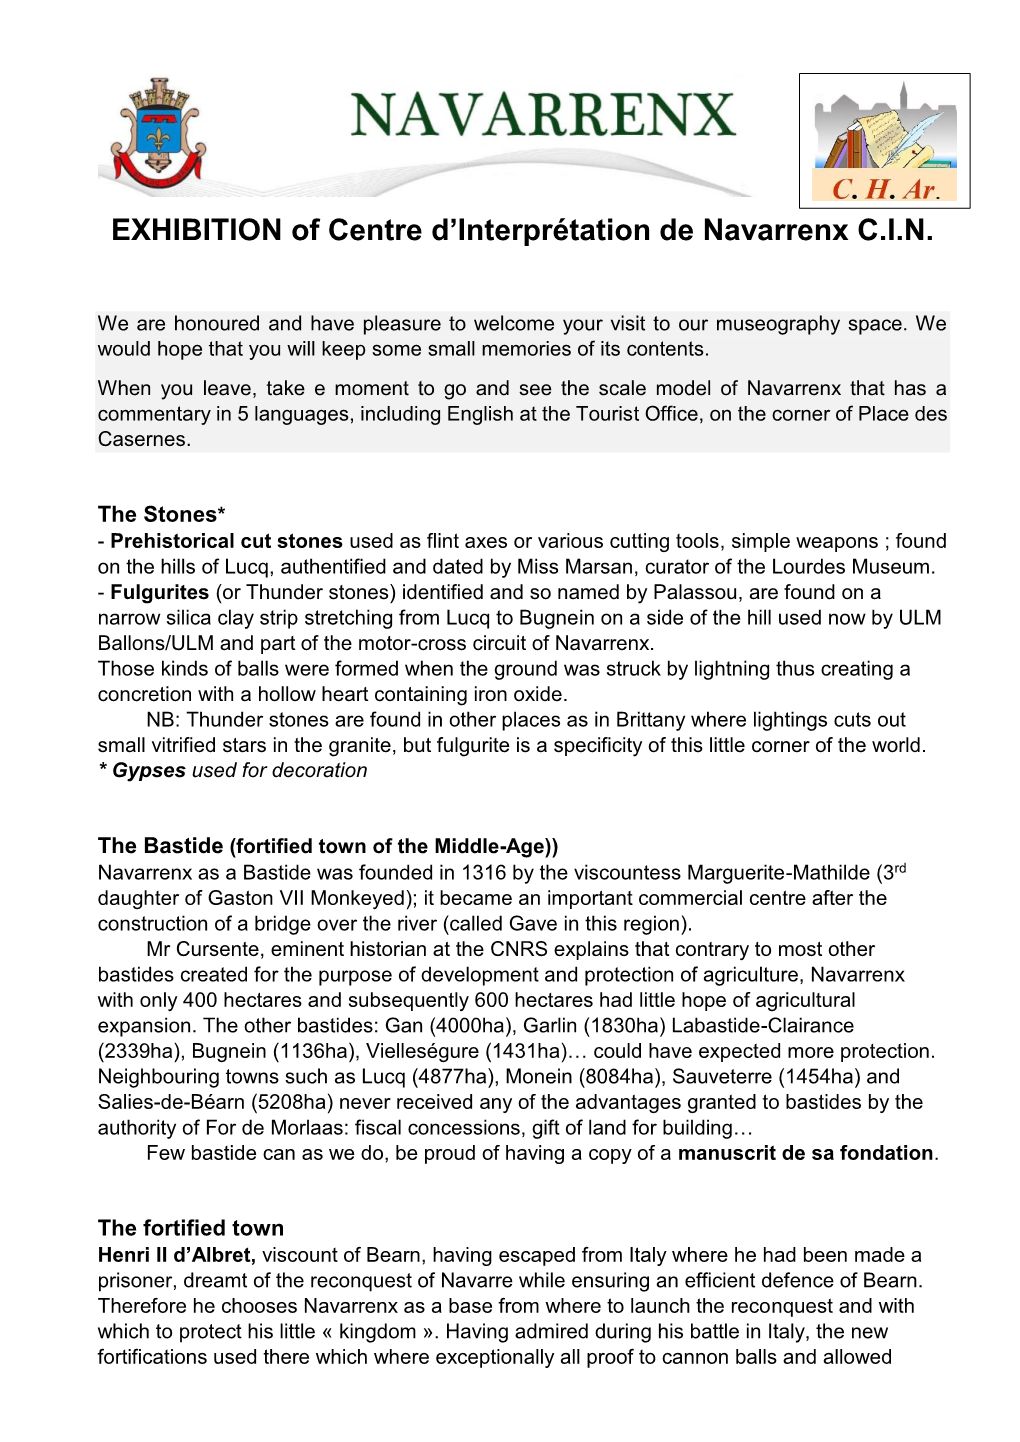 EXHIBITION of Centre D'interprétation De Navarrenx C.I.N